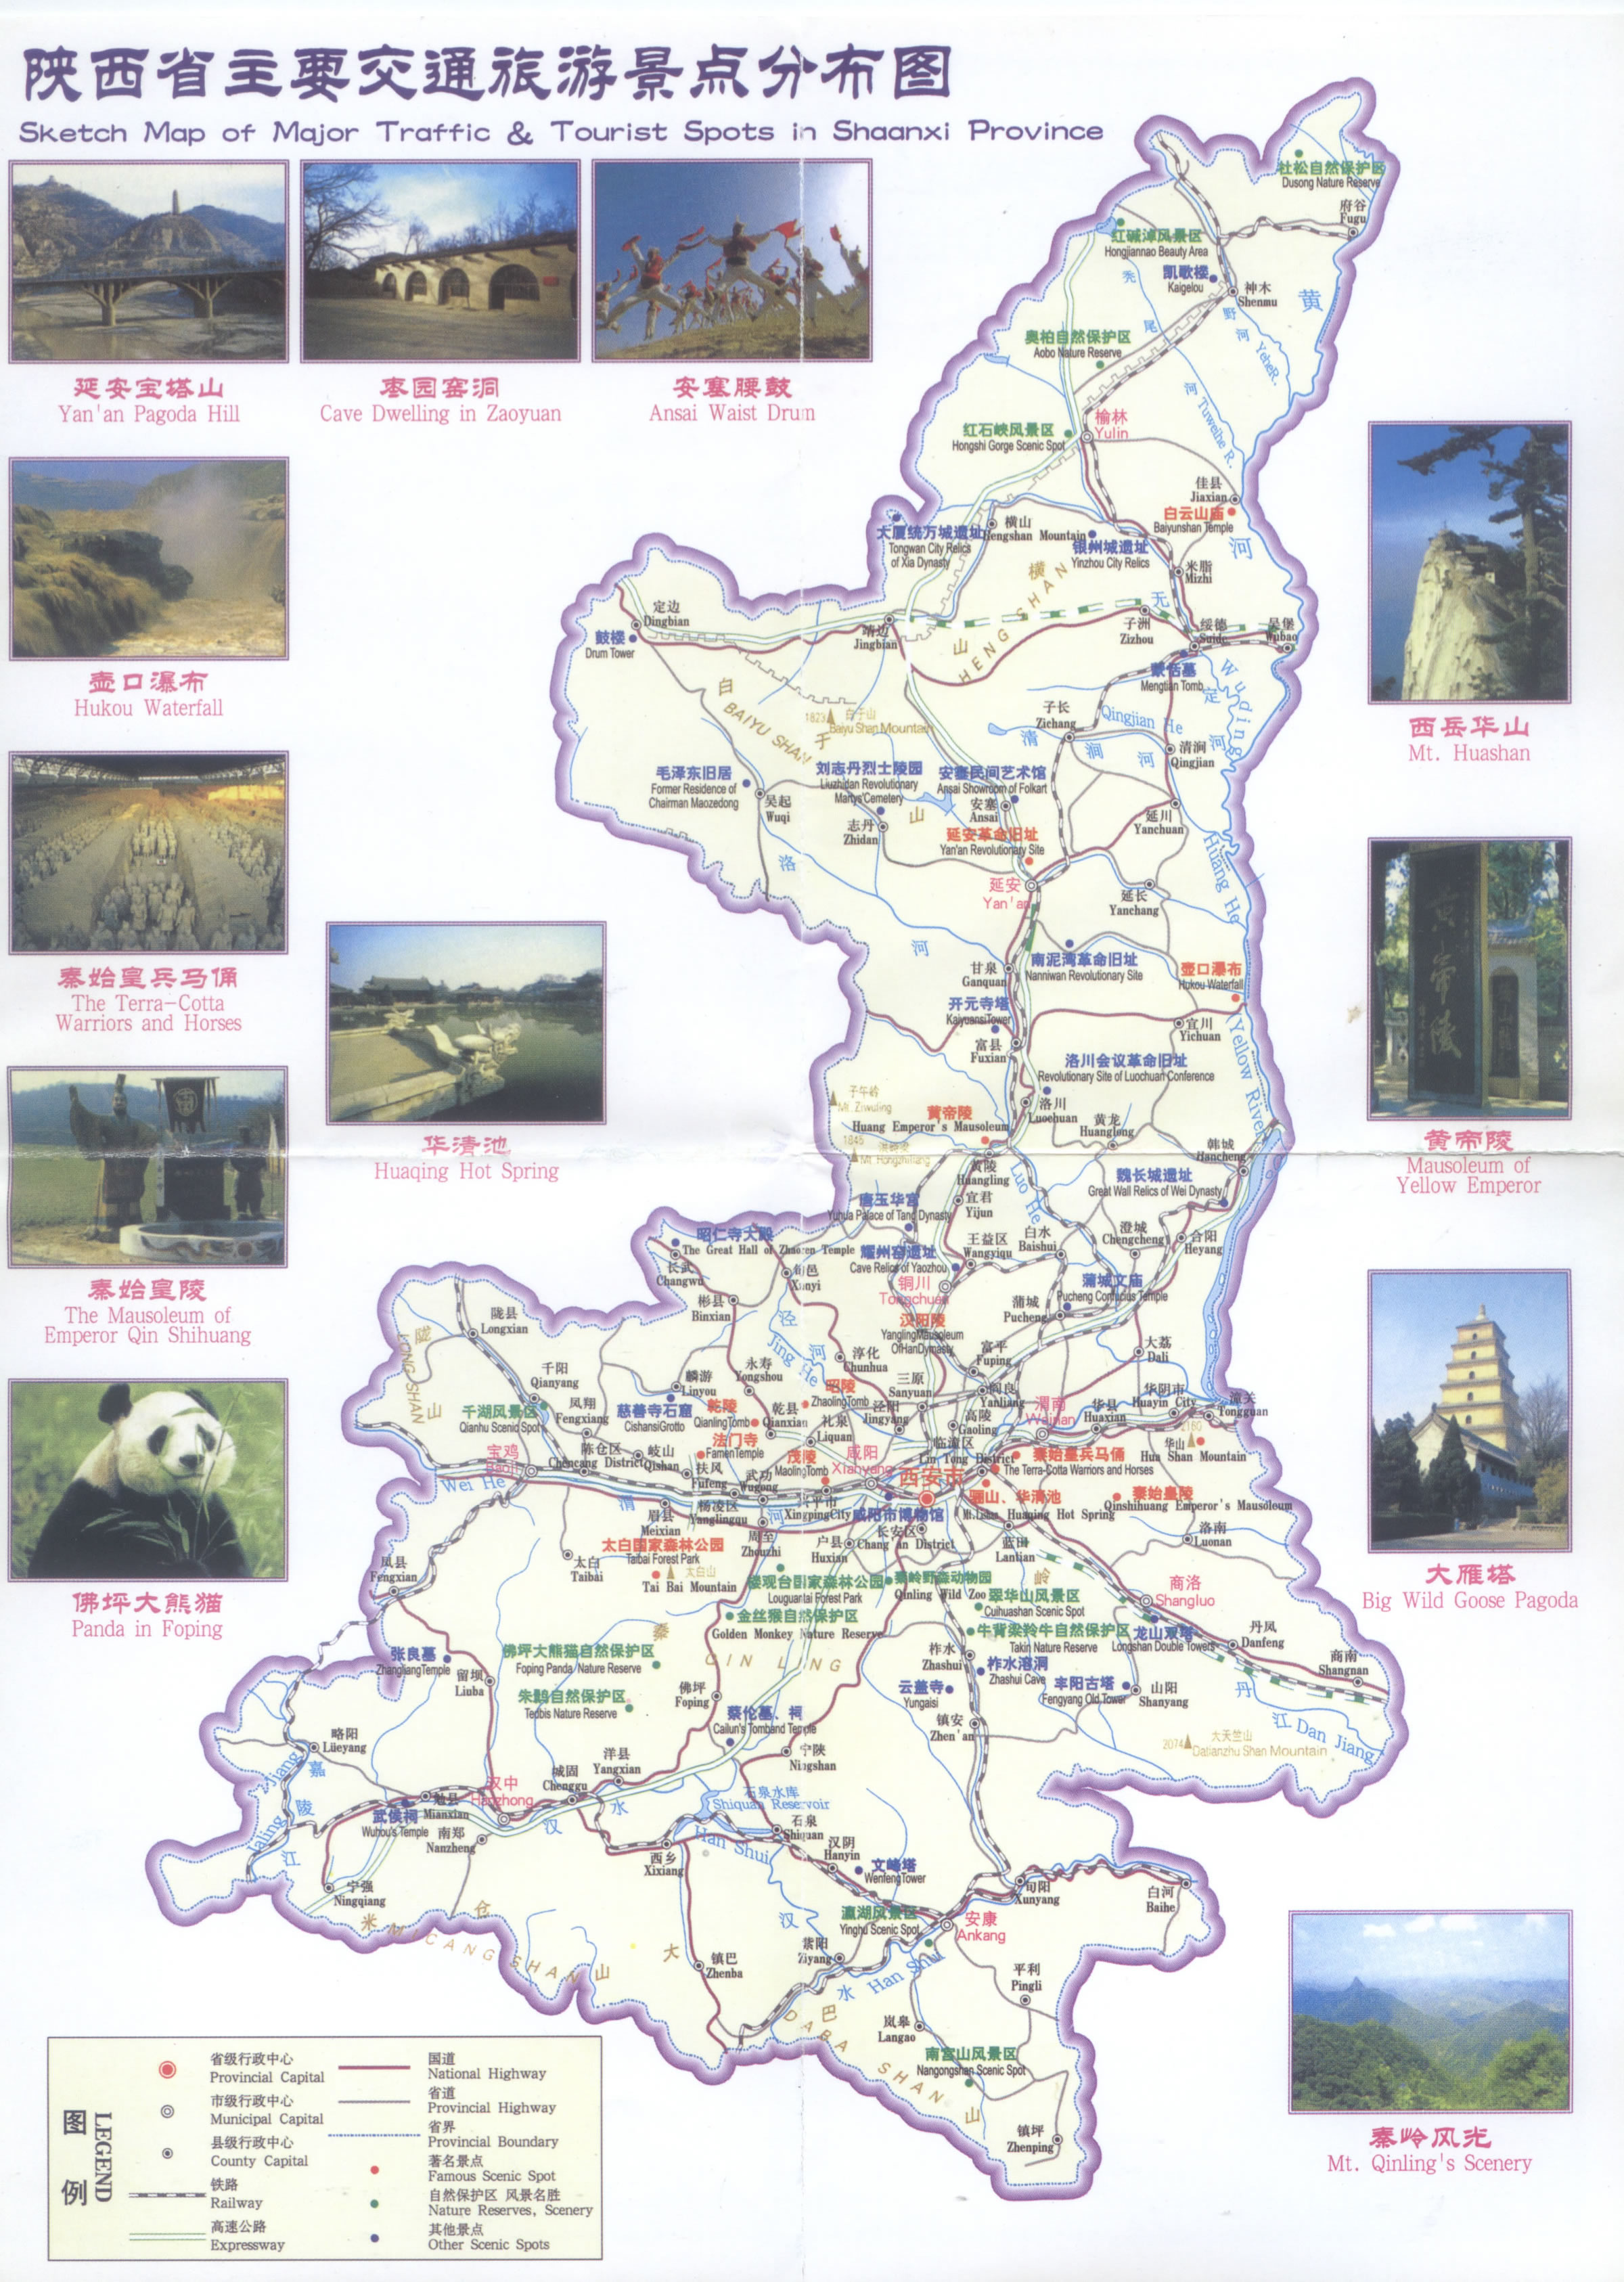 陕西省主要交通旅游景点分布图